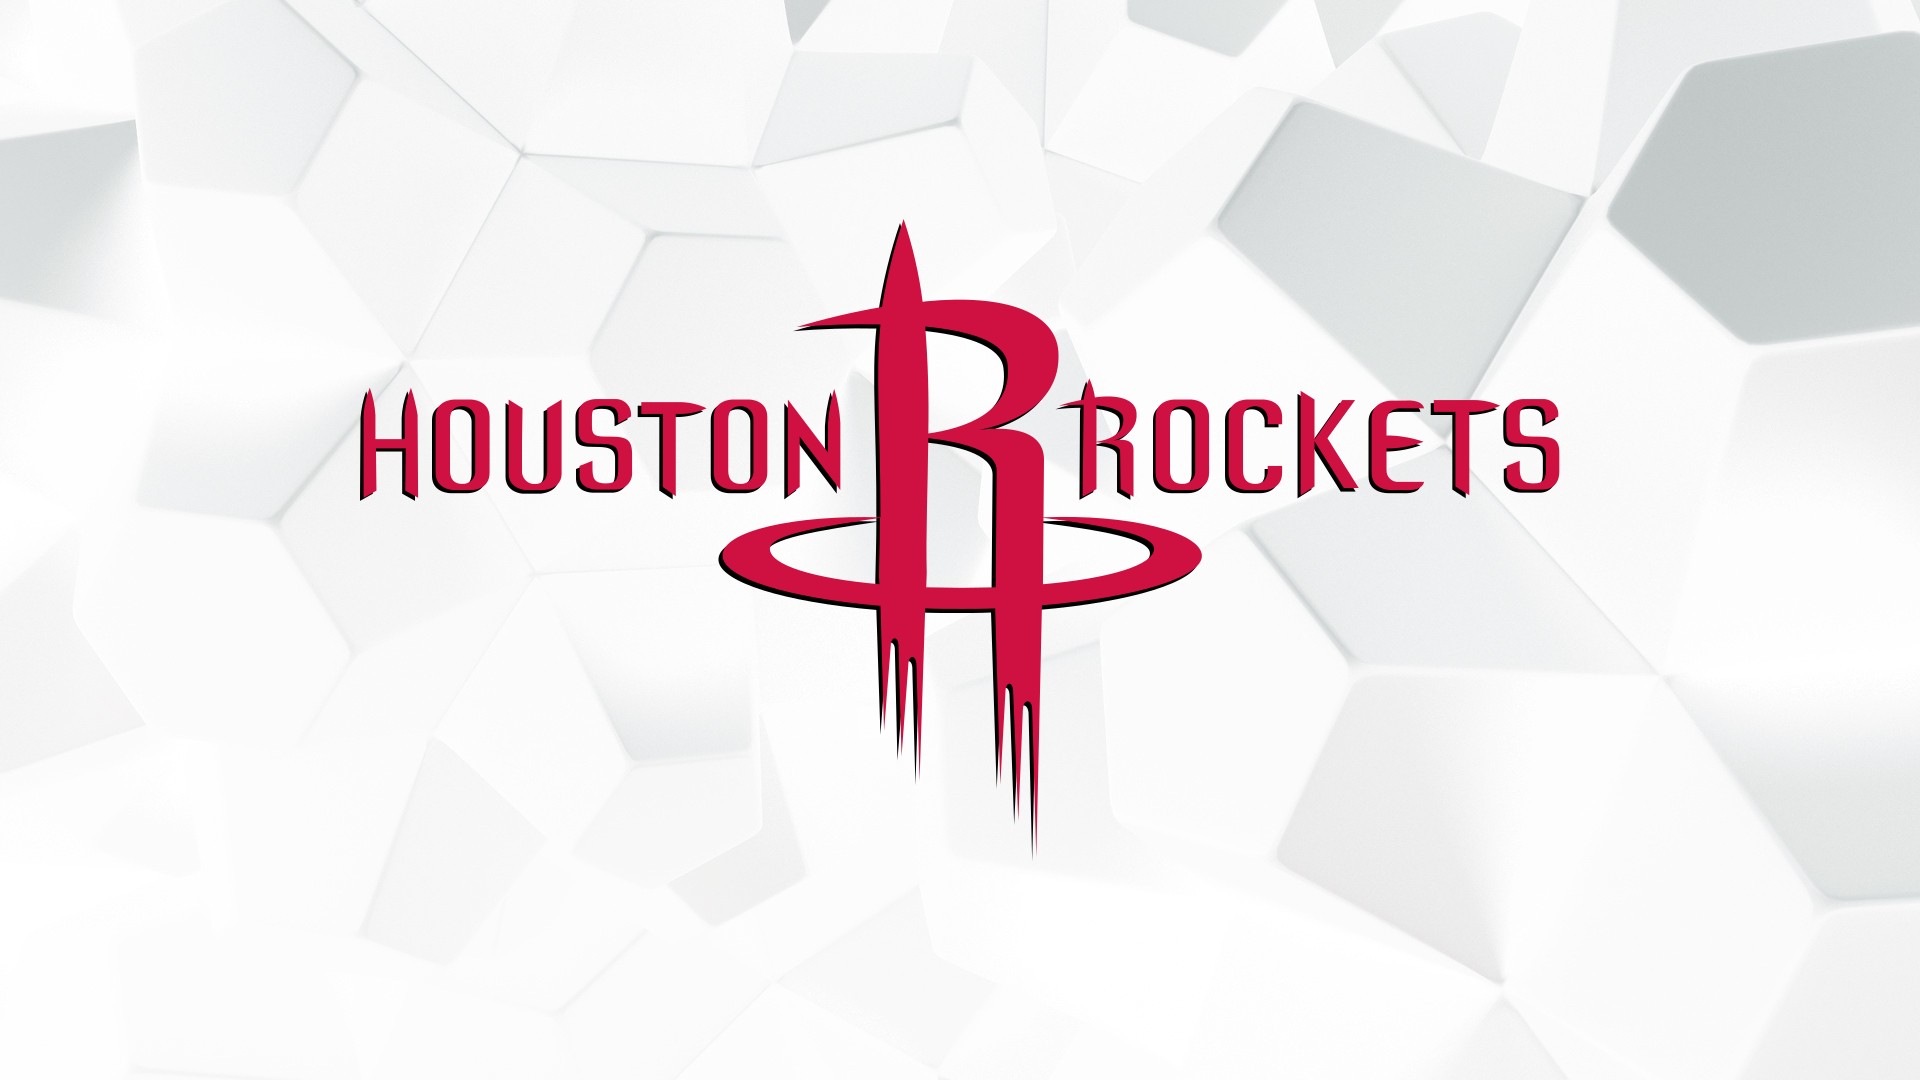 Wallpaper Desktop Houston Rockets Hd With Image Dimensions - Houston Rockets - HD Wallpaper 